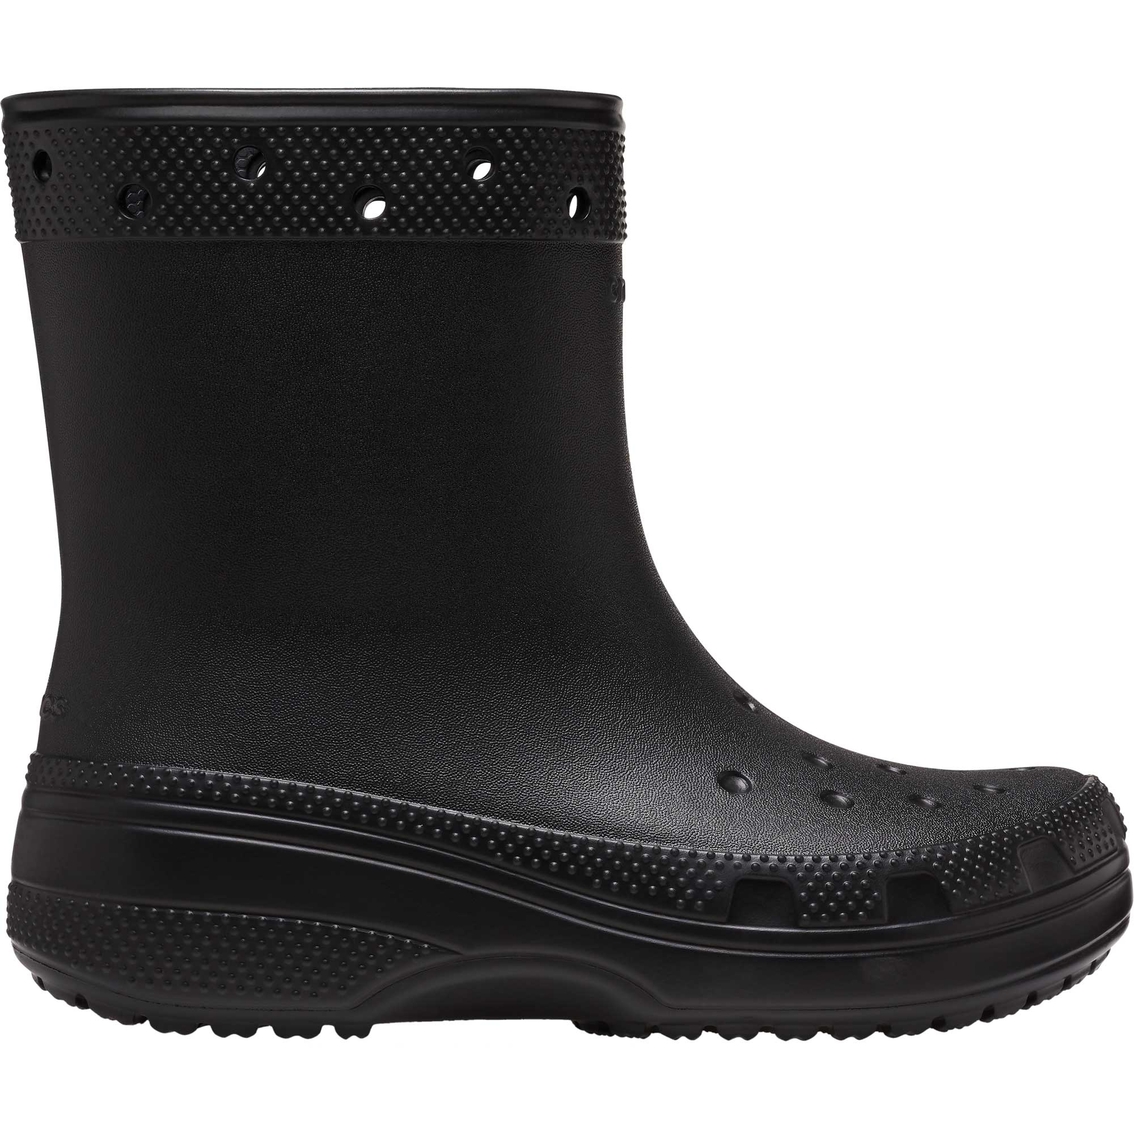 Crocs Women's Classic Rain Boots | Outdoor | Shoes | Shop The Exchange